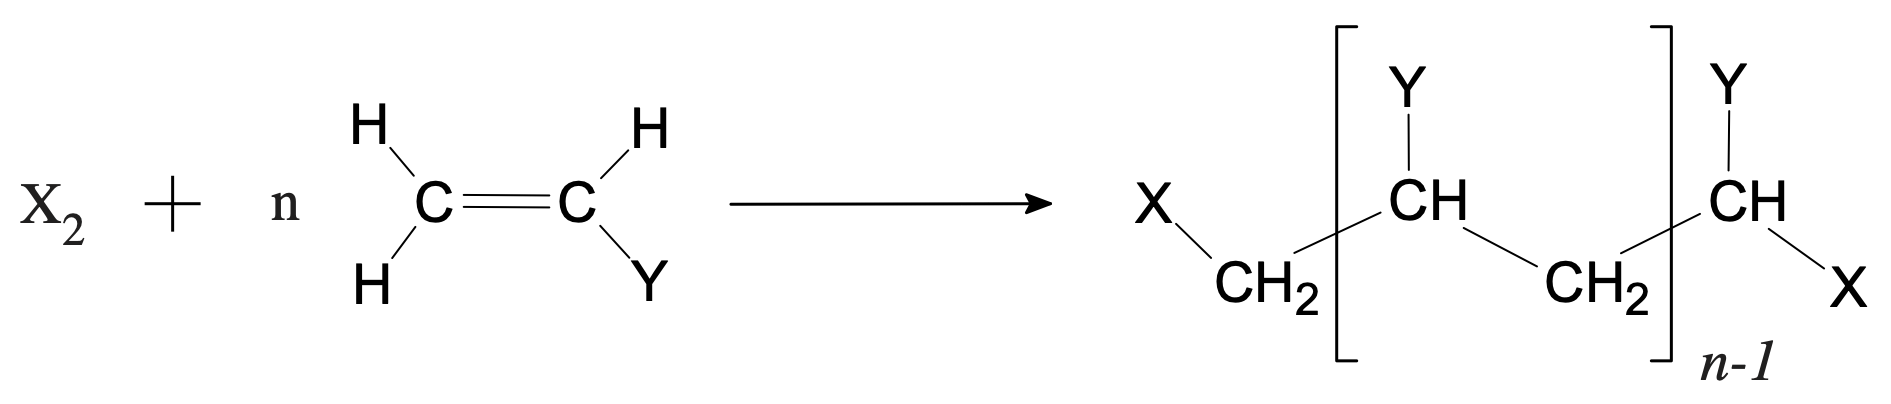 Schéma de polymérisation d’un polymère vinylique